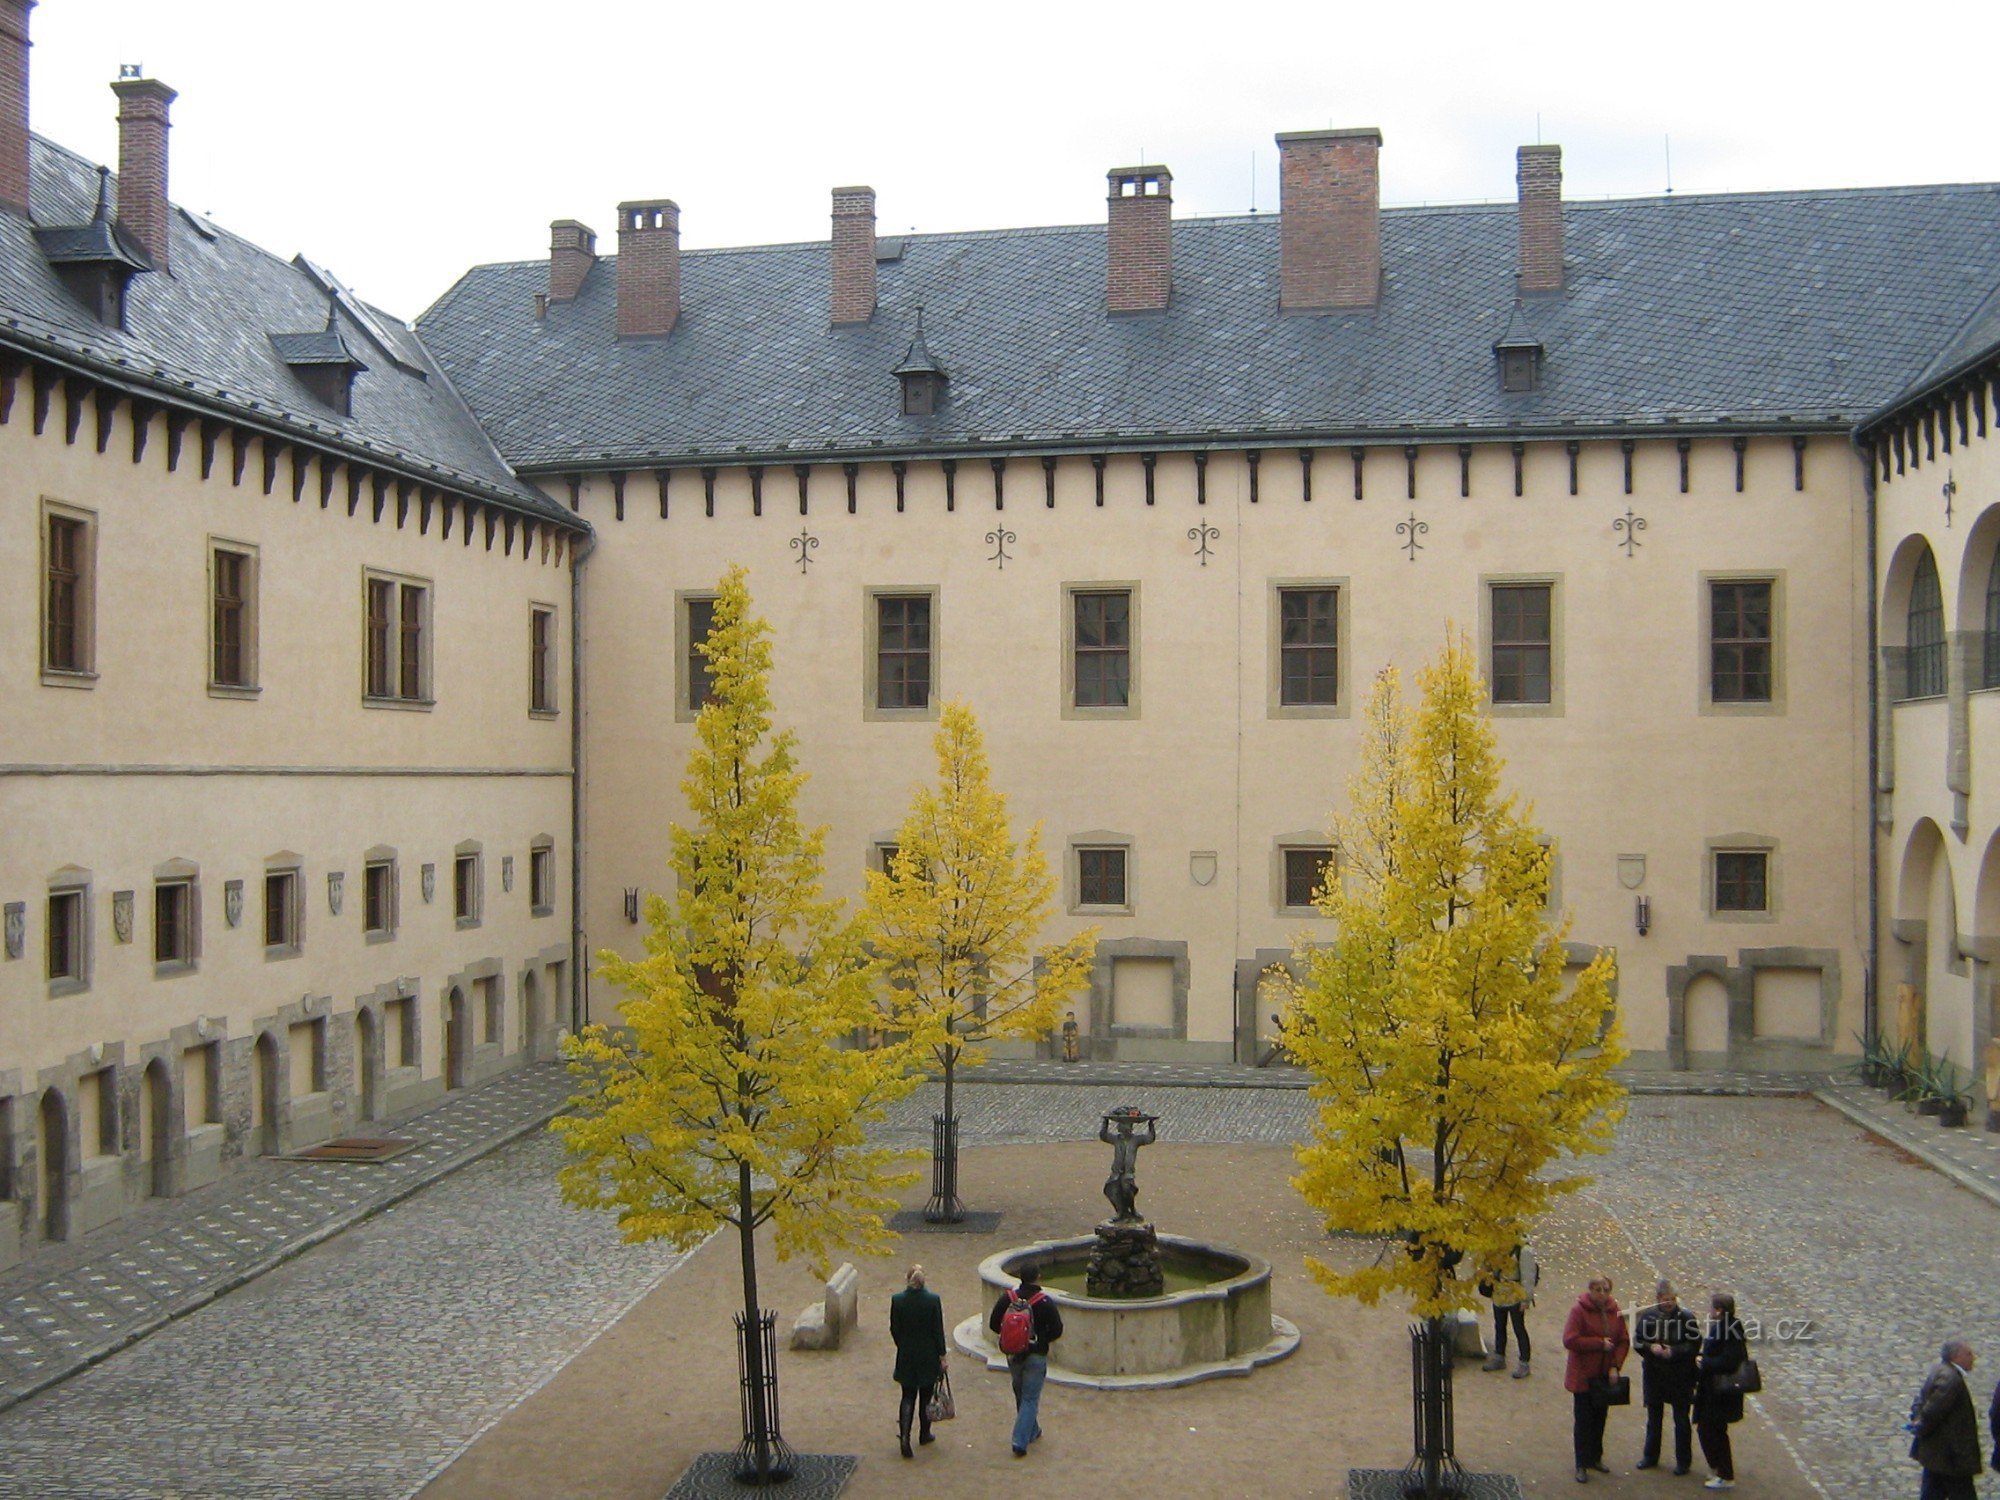 Влашский двор - слева внизу видны остатки (ниши) кузницы.